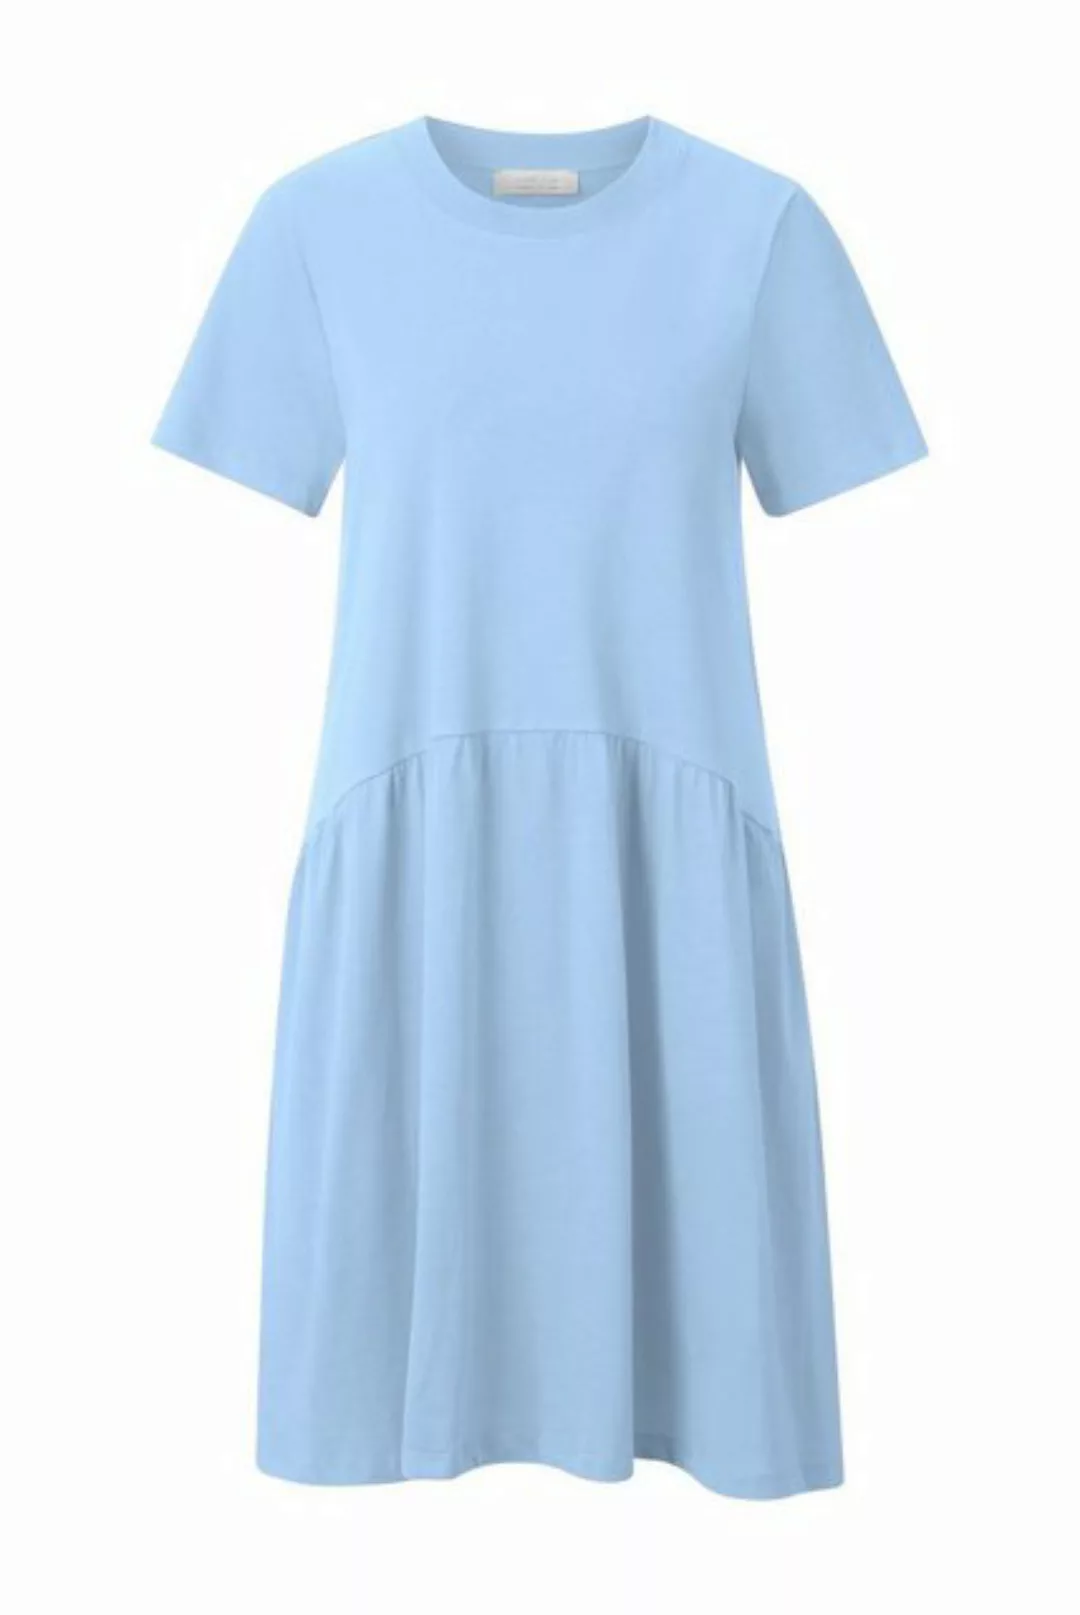 Rich & Royal Sommerkleid T-Shirt dress organic, cotton blue günstig online kaufen